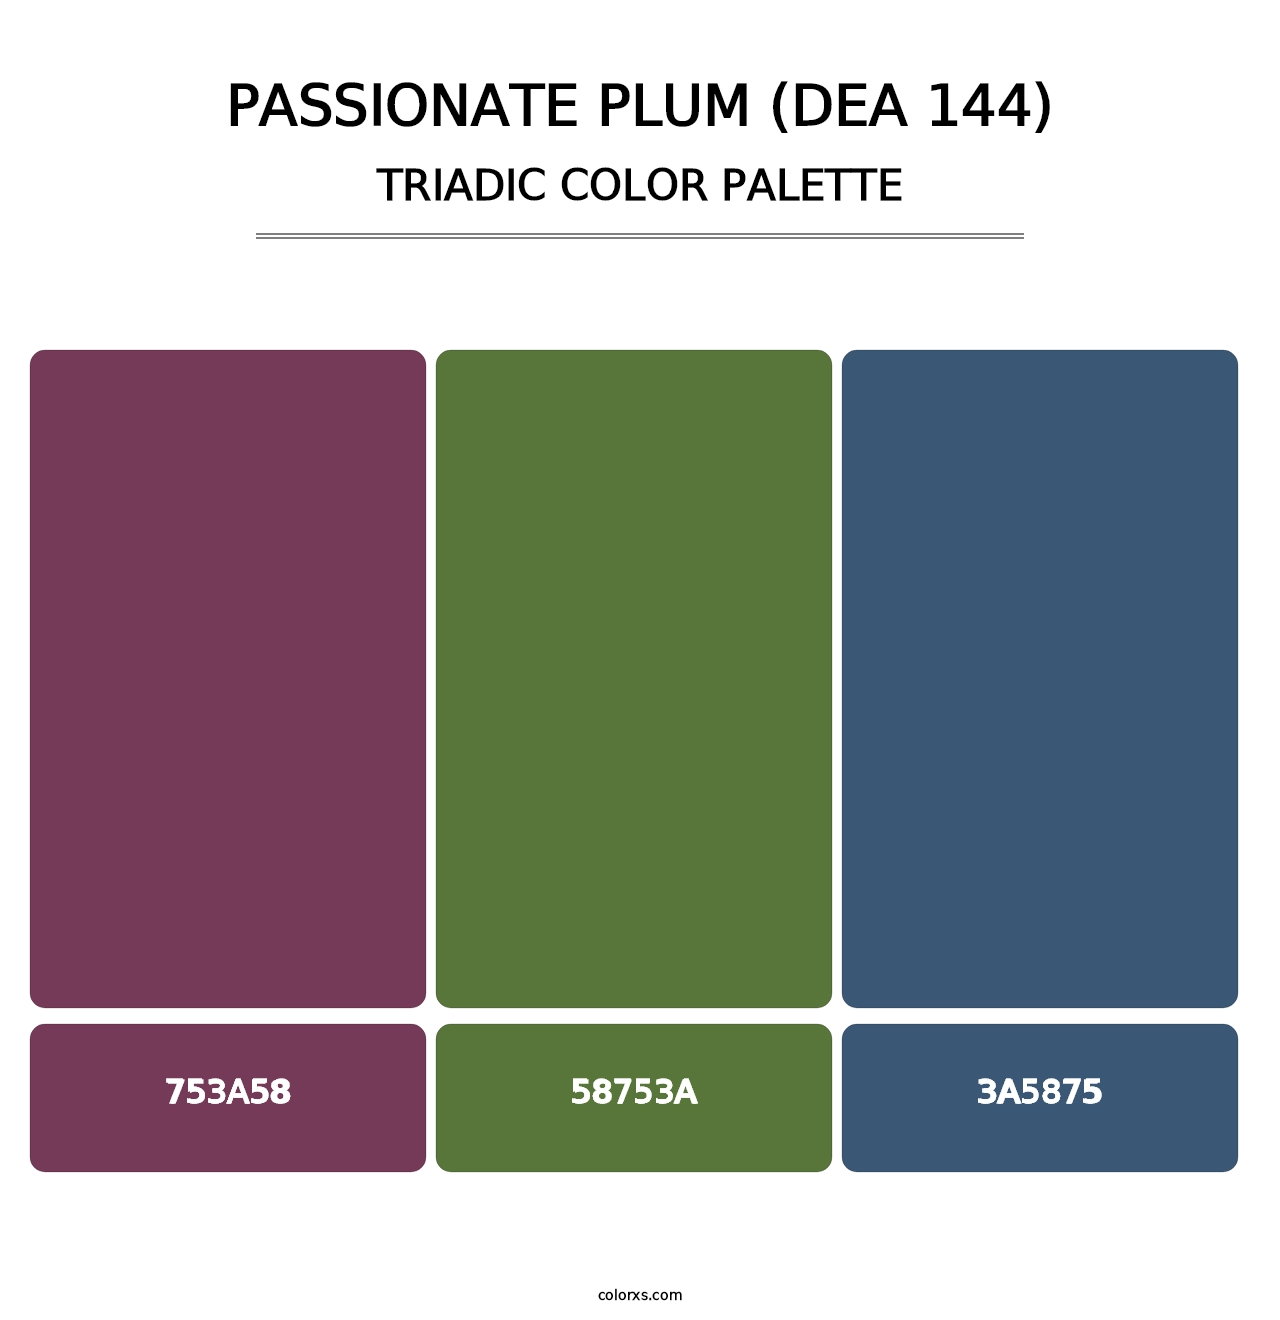 Passionate Plum (DEA 144) - Triadic Color Palette